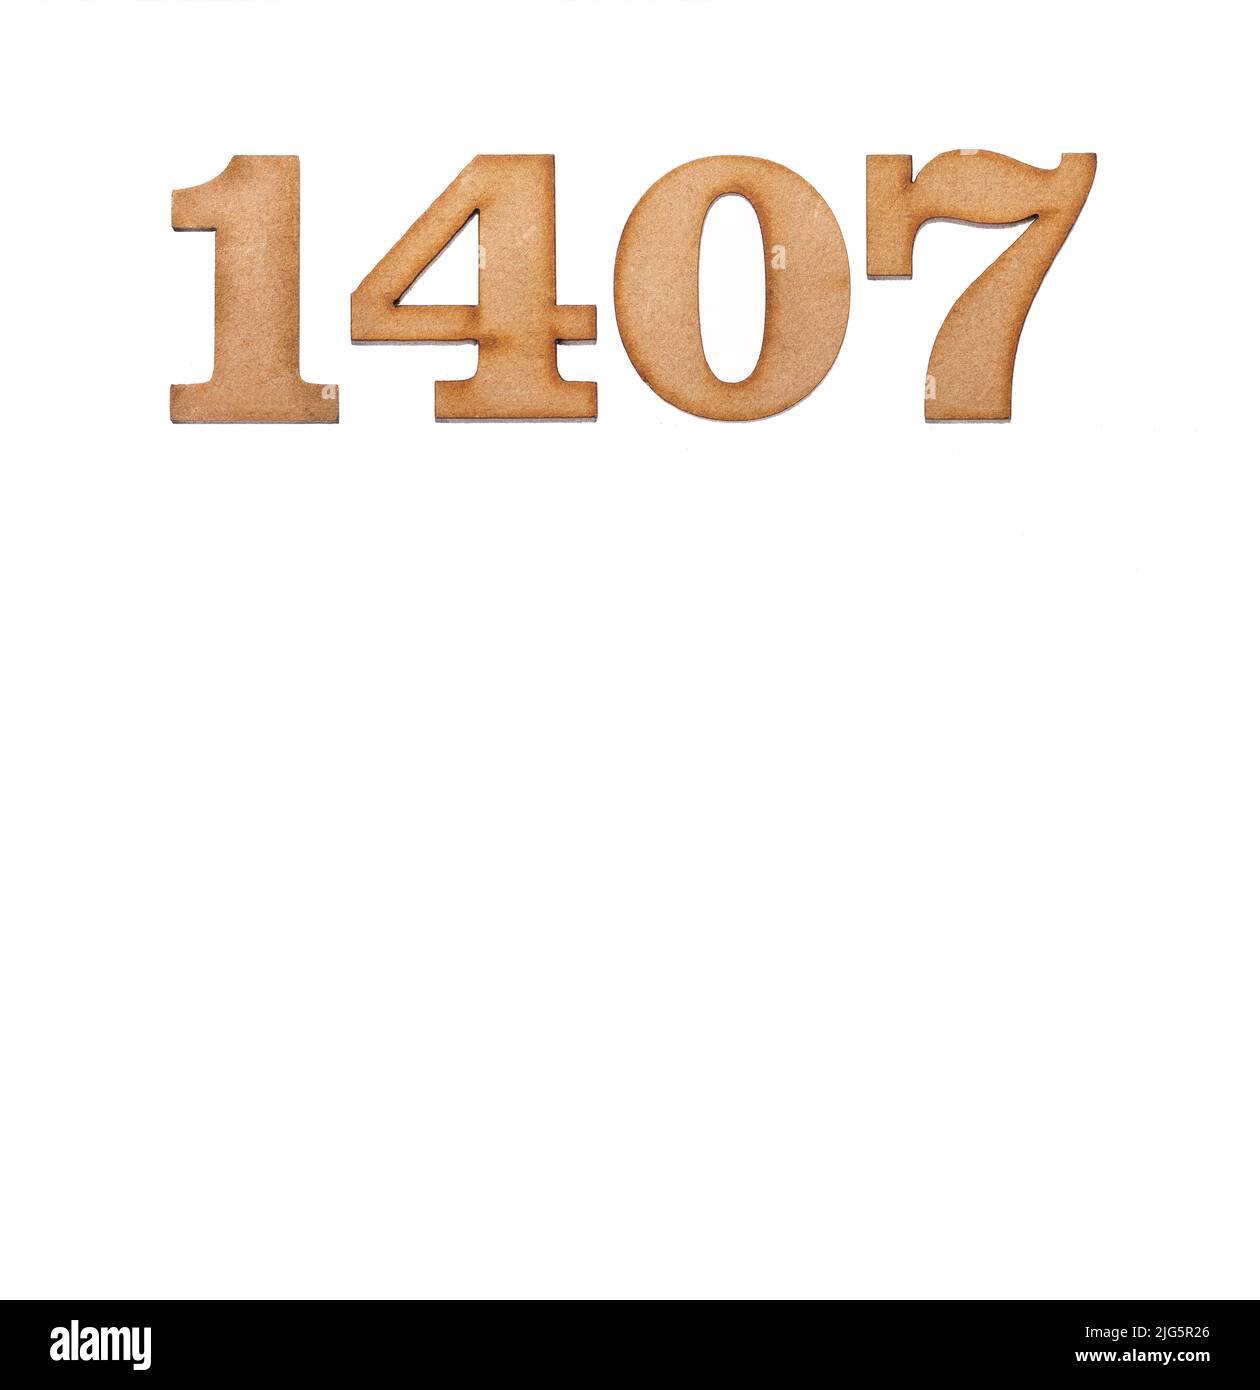 Nummer 1407 aus Holz, isoliert auf weißem Hintergrund Stockfoto